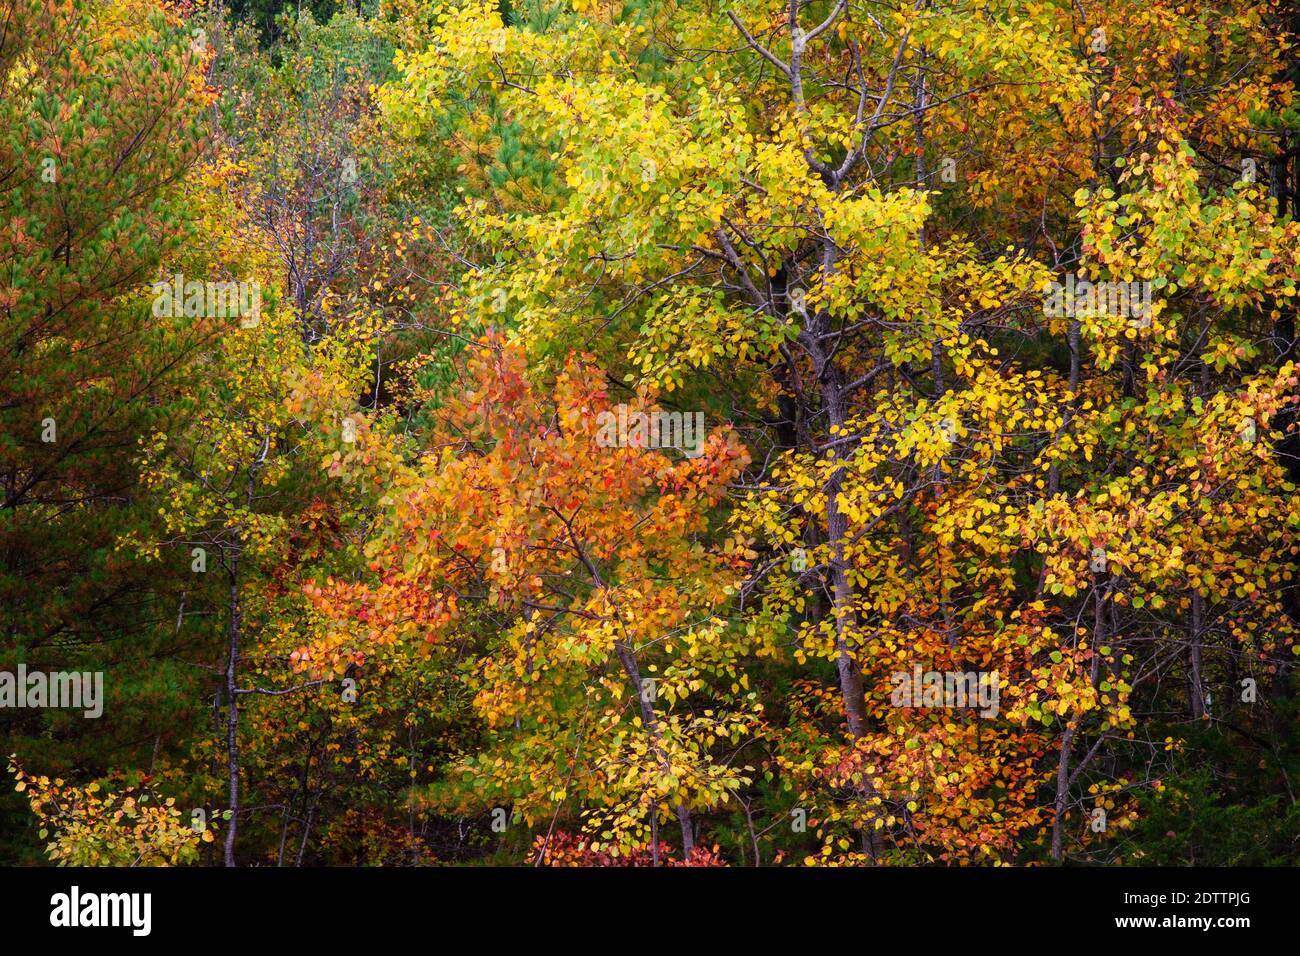 An autumn forest in Pennsylvania’s Pocono Mountains Stock Photo